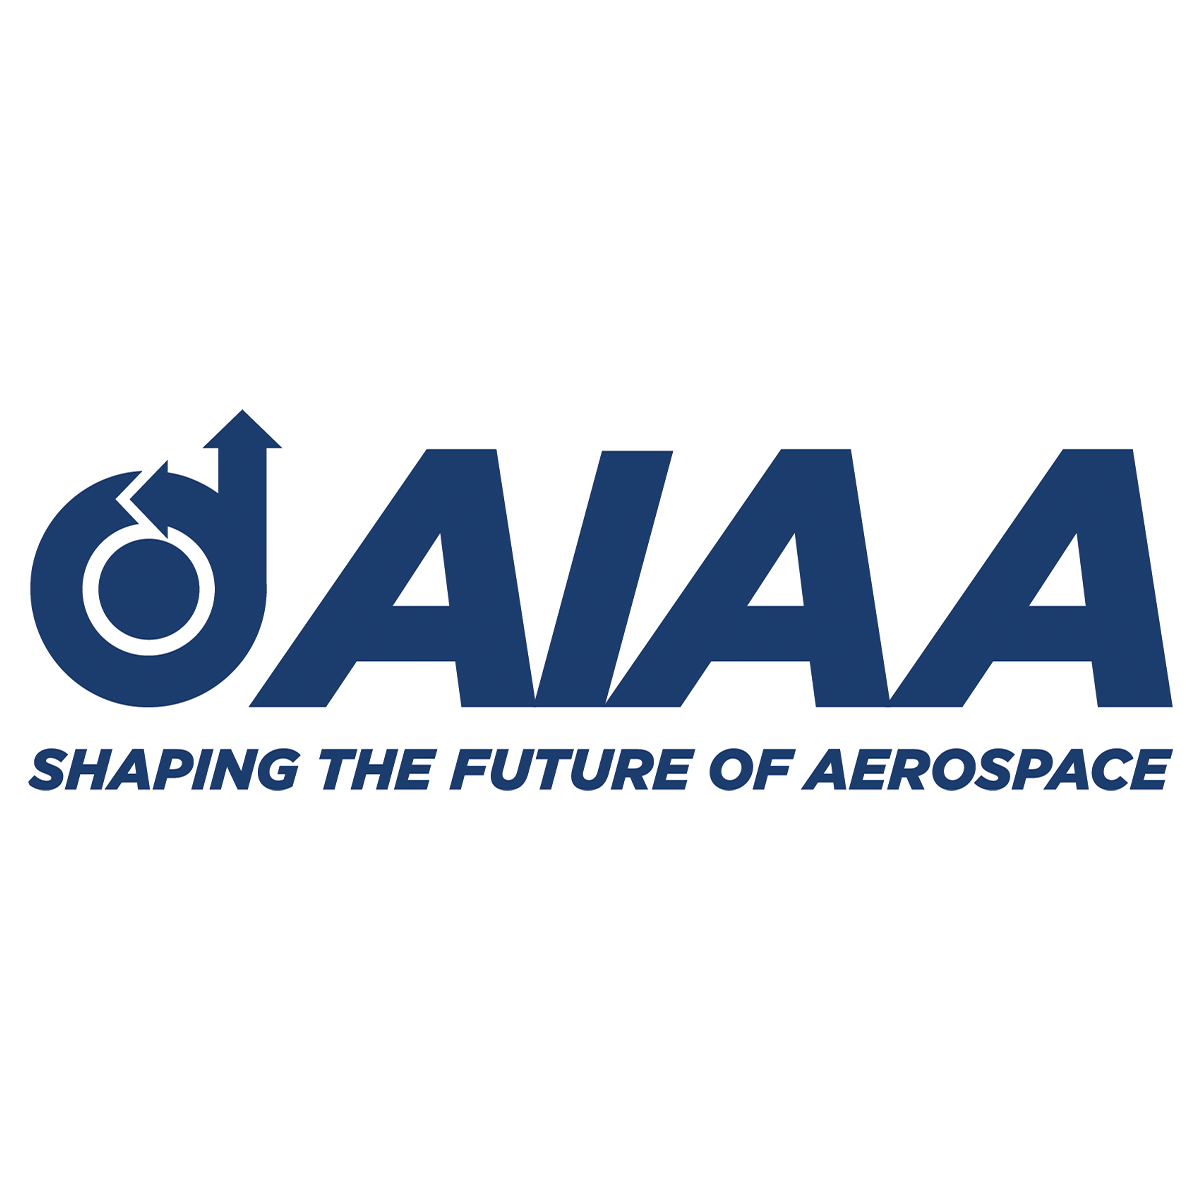 American Institute of Aeronautics and Astronautics (AIAA)